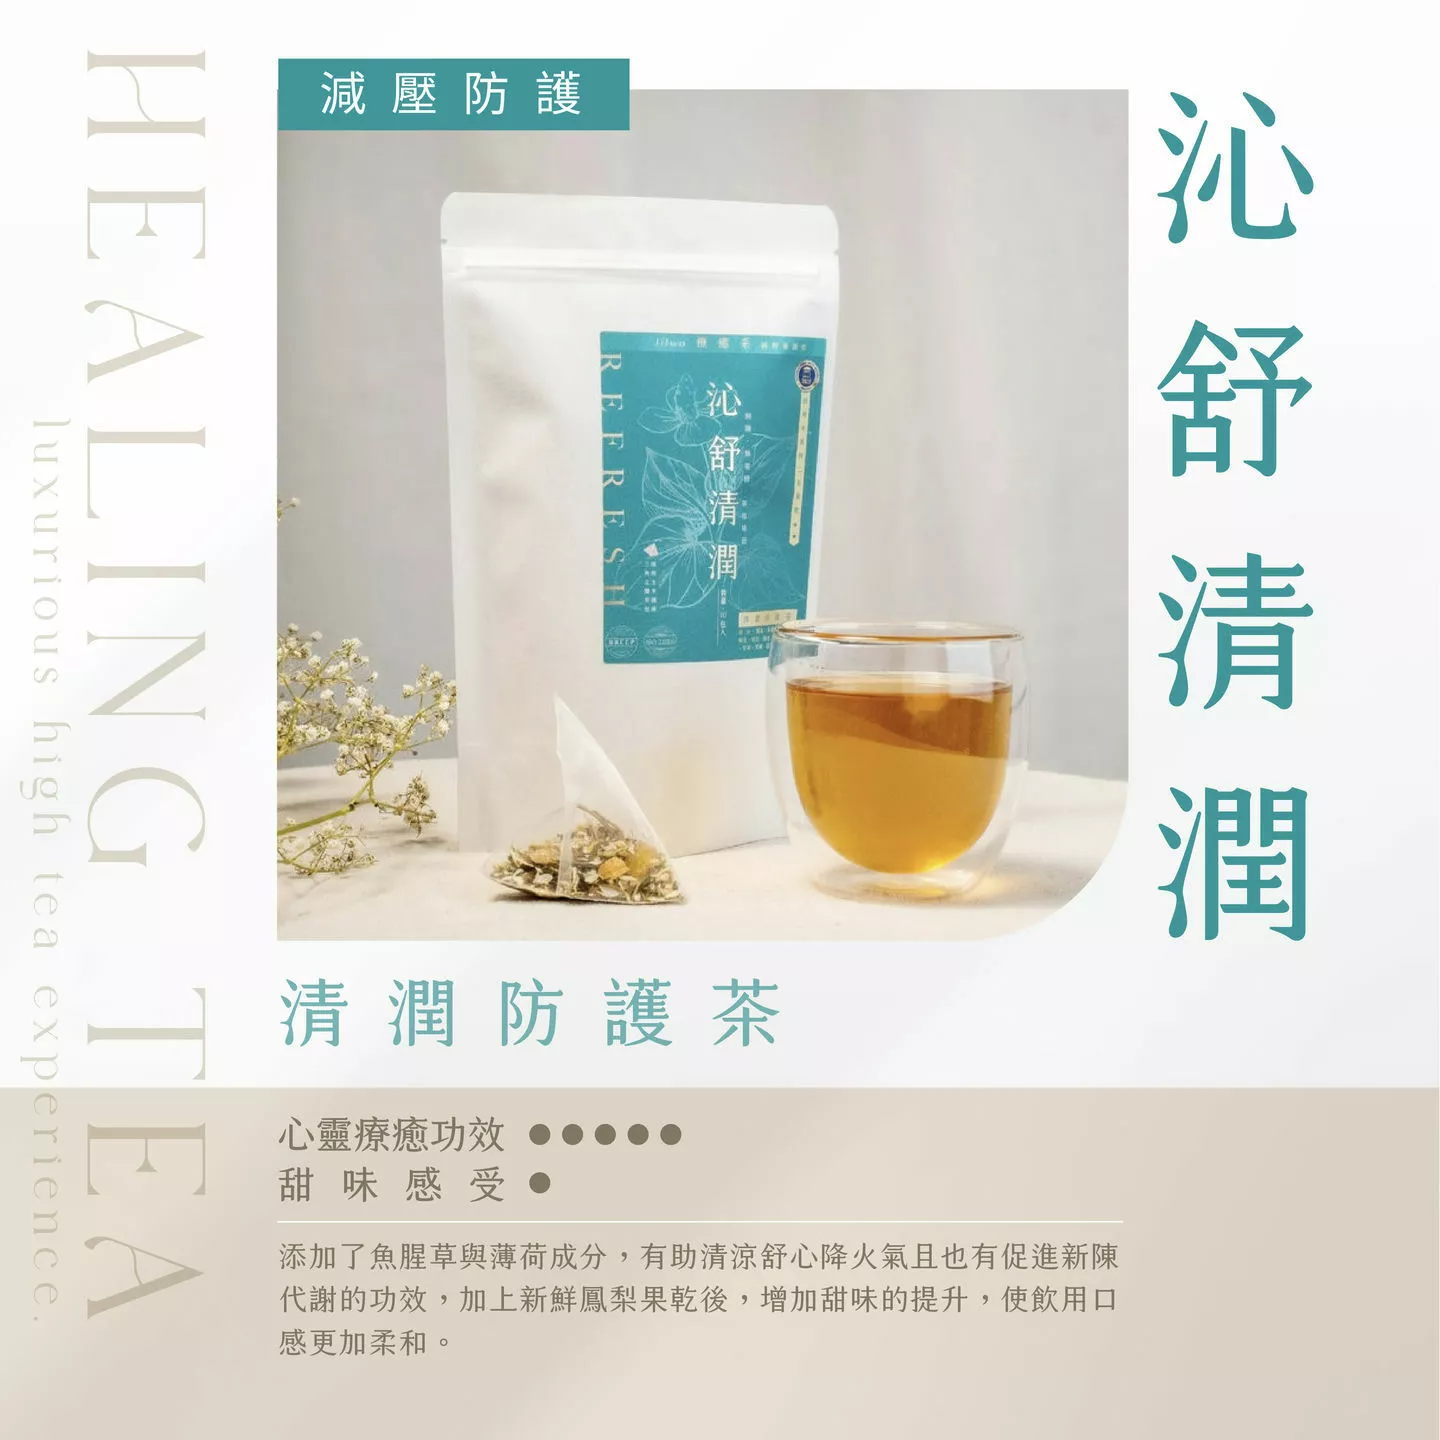 療癒系-清潤防護茶